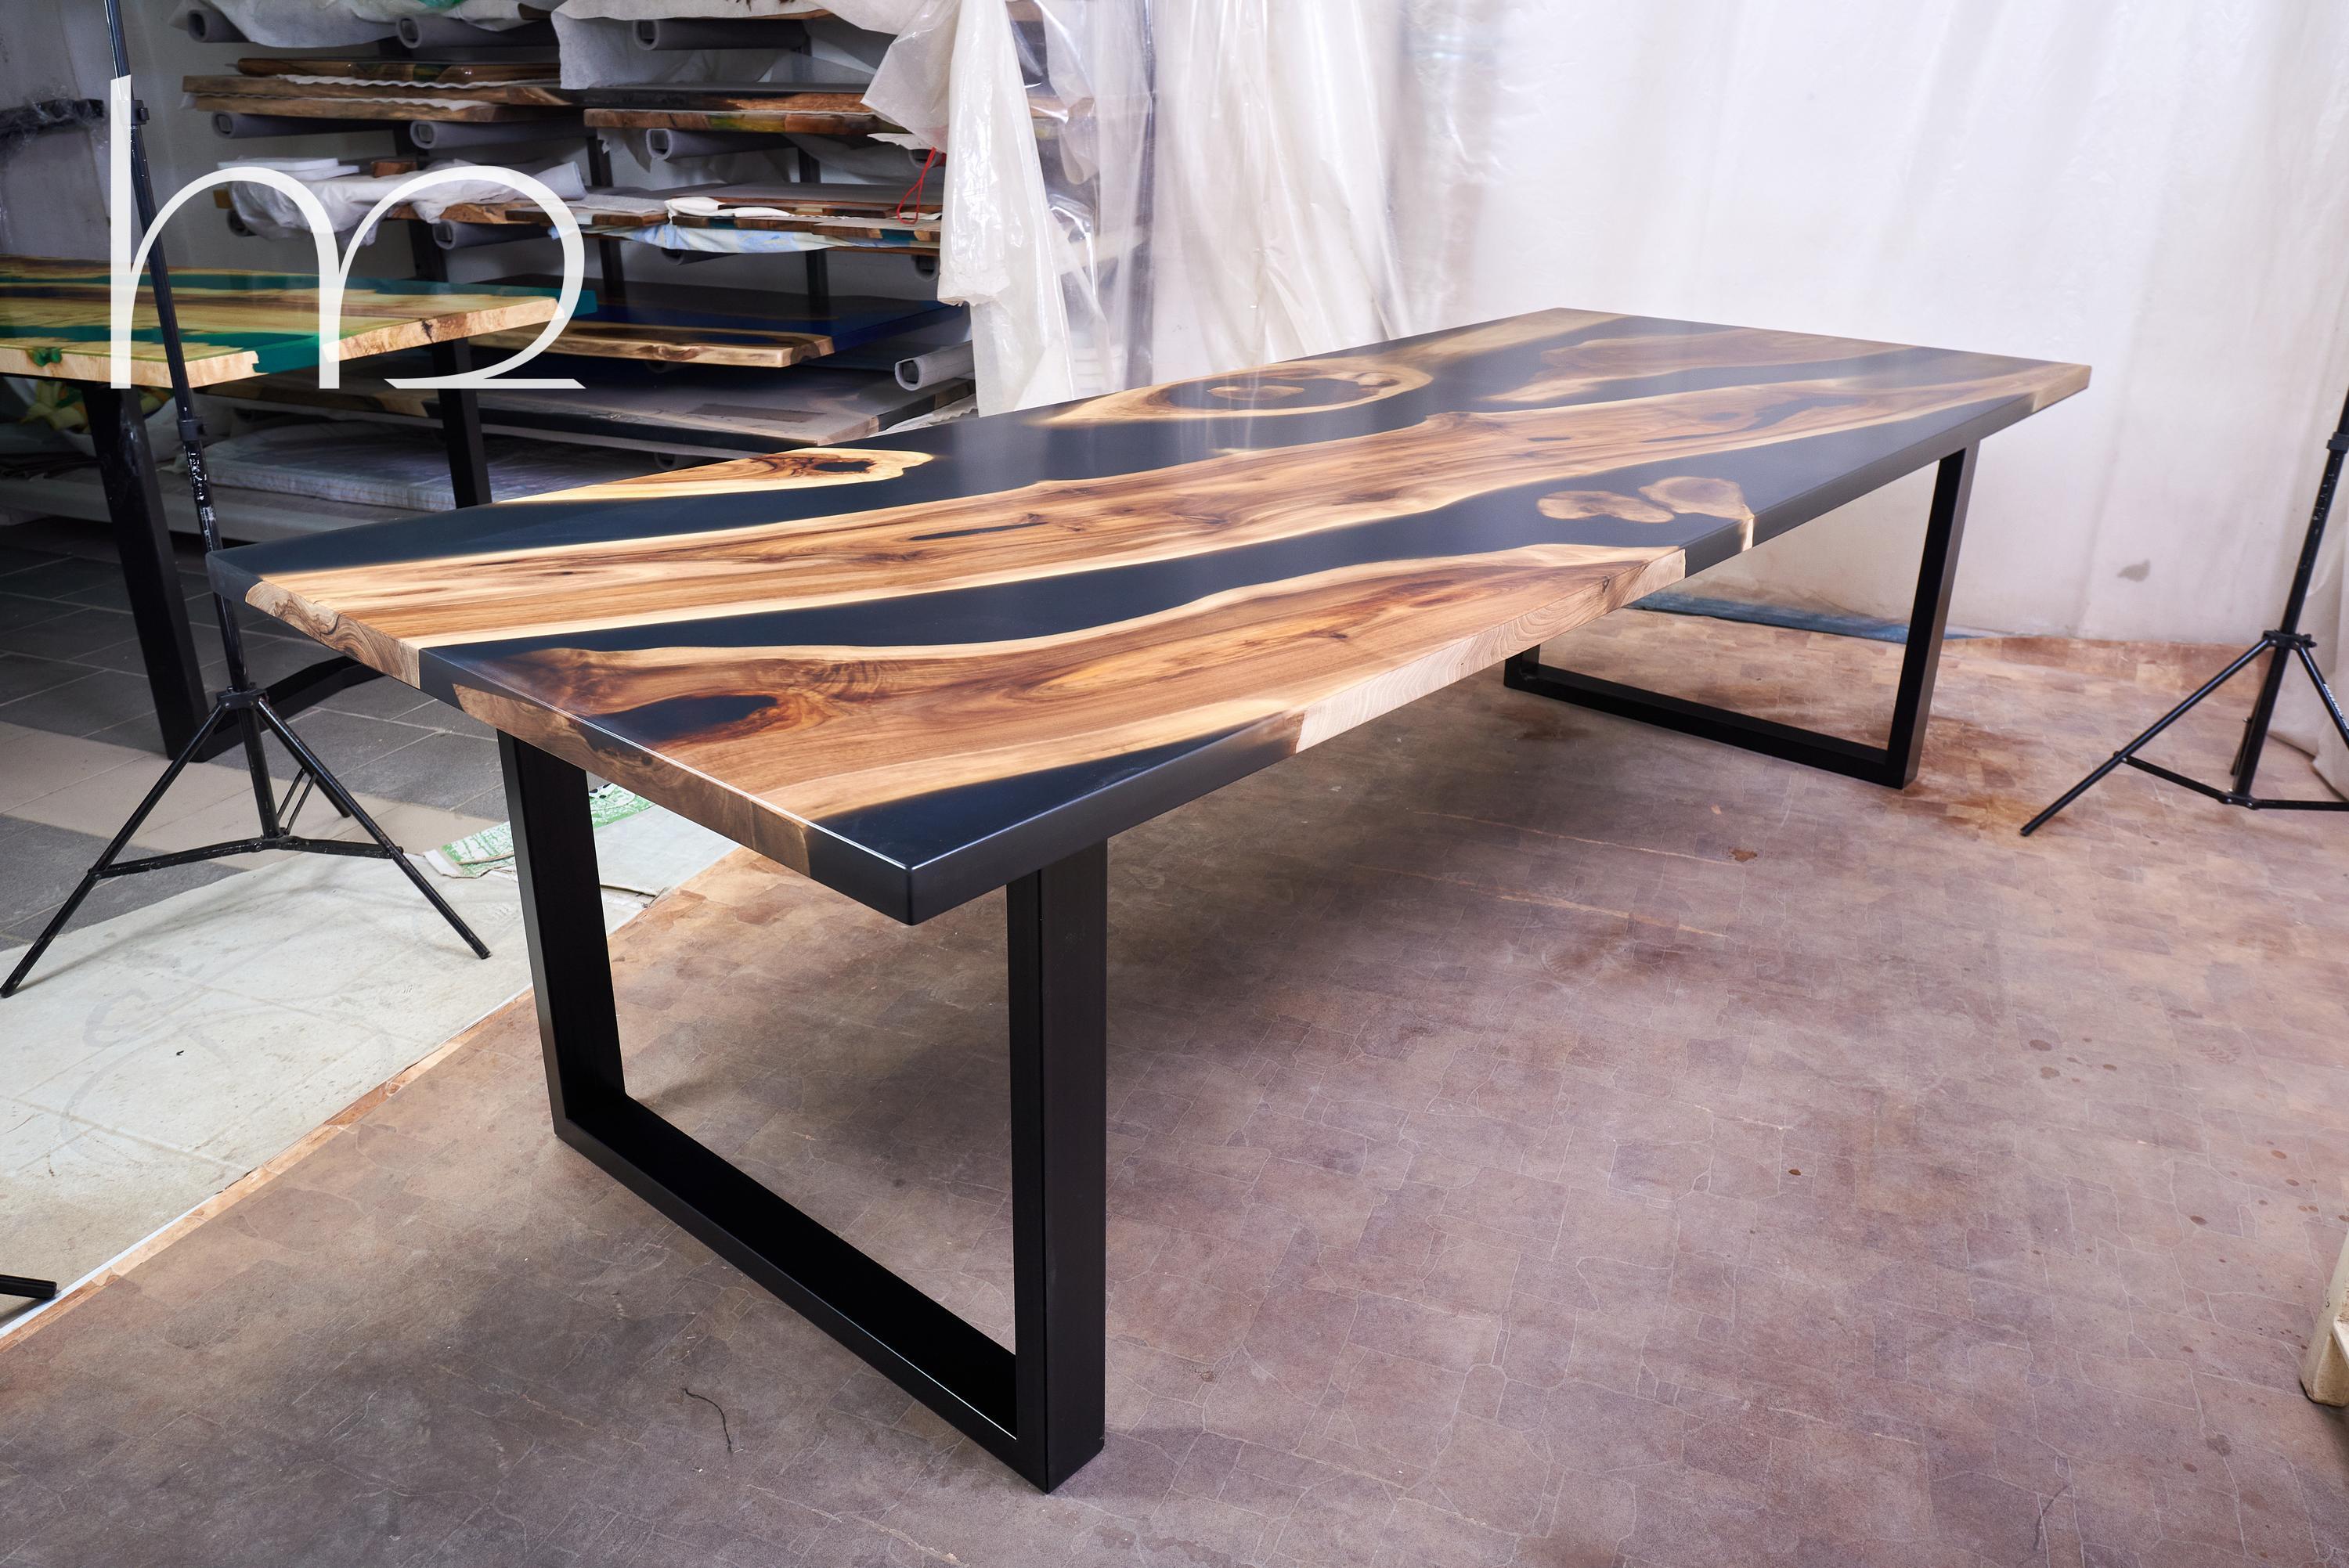 Der Tisch ist aus feinem MATERIAL gefertigt. Es handelt sich um alte Platten und Walnusswurzeln. Mit seiner einzigartigen Textur, Maserungsfarbe und seinem Charakter. Verewigt für Generationen. Ideal für Meetings und Familienessen. Er hat eine